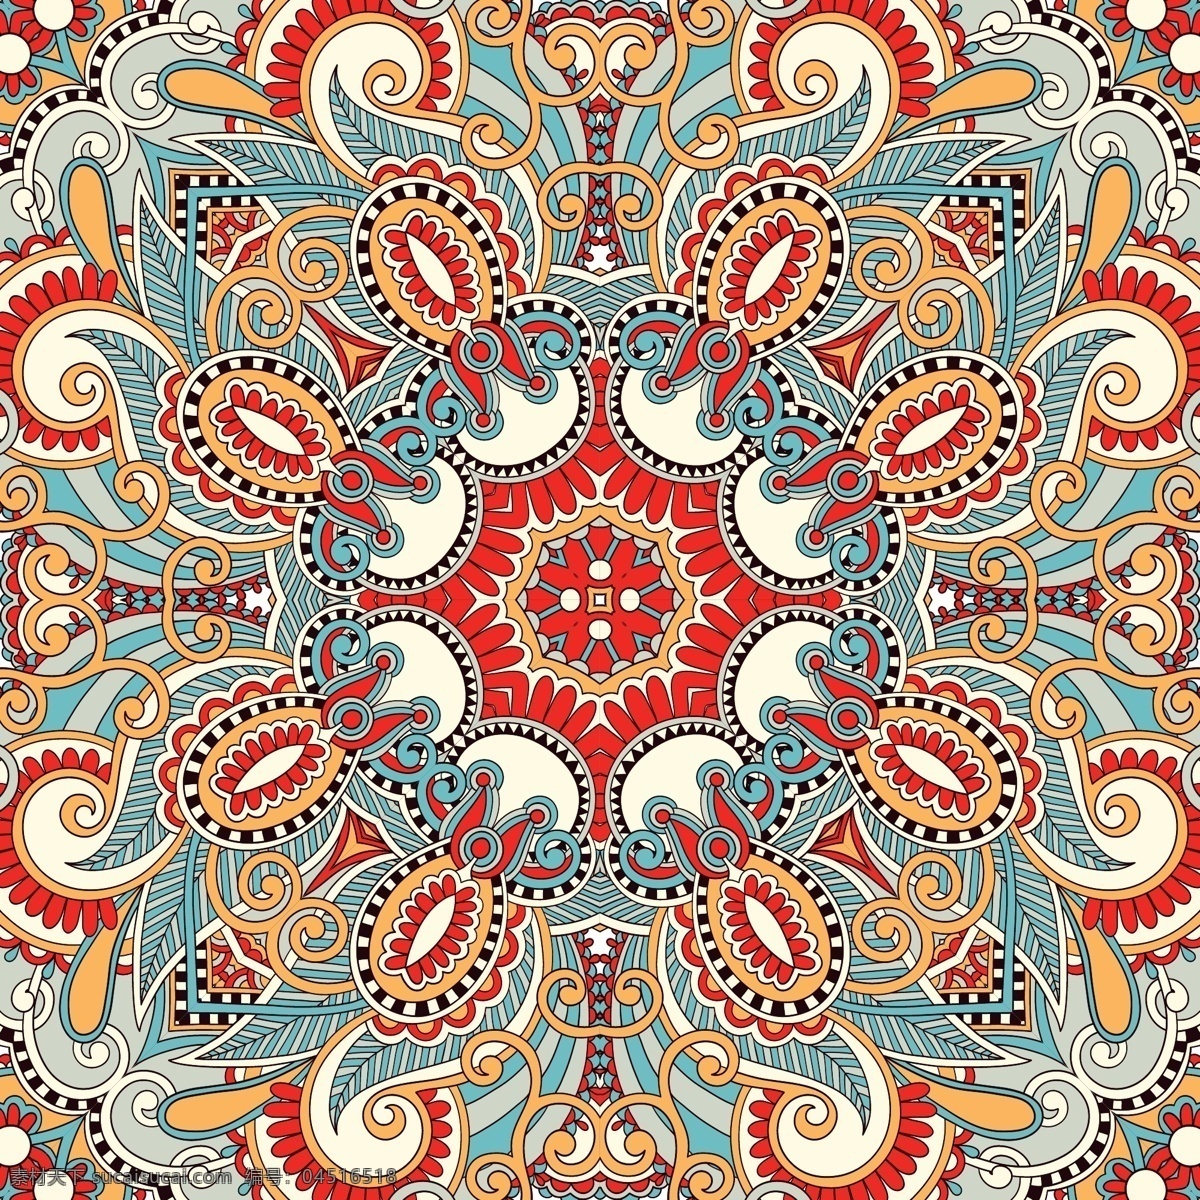 古典 欧式 花纹 背景 矢量 背景底纹 传统花纹 地毯背景 地毯花纹 地毯图案 矢量图 其他矢量图